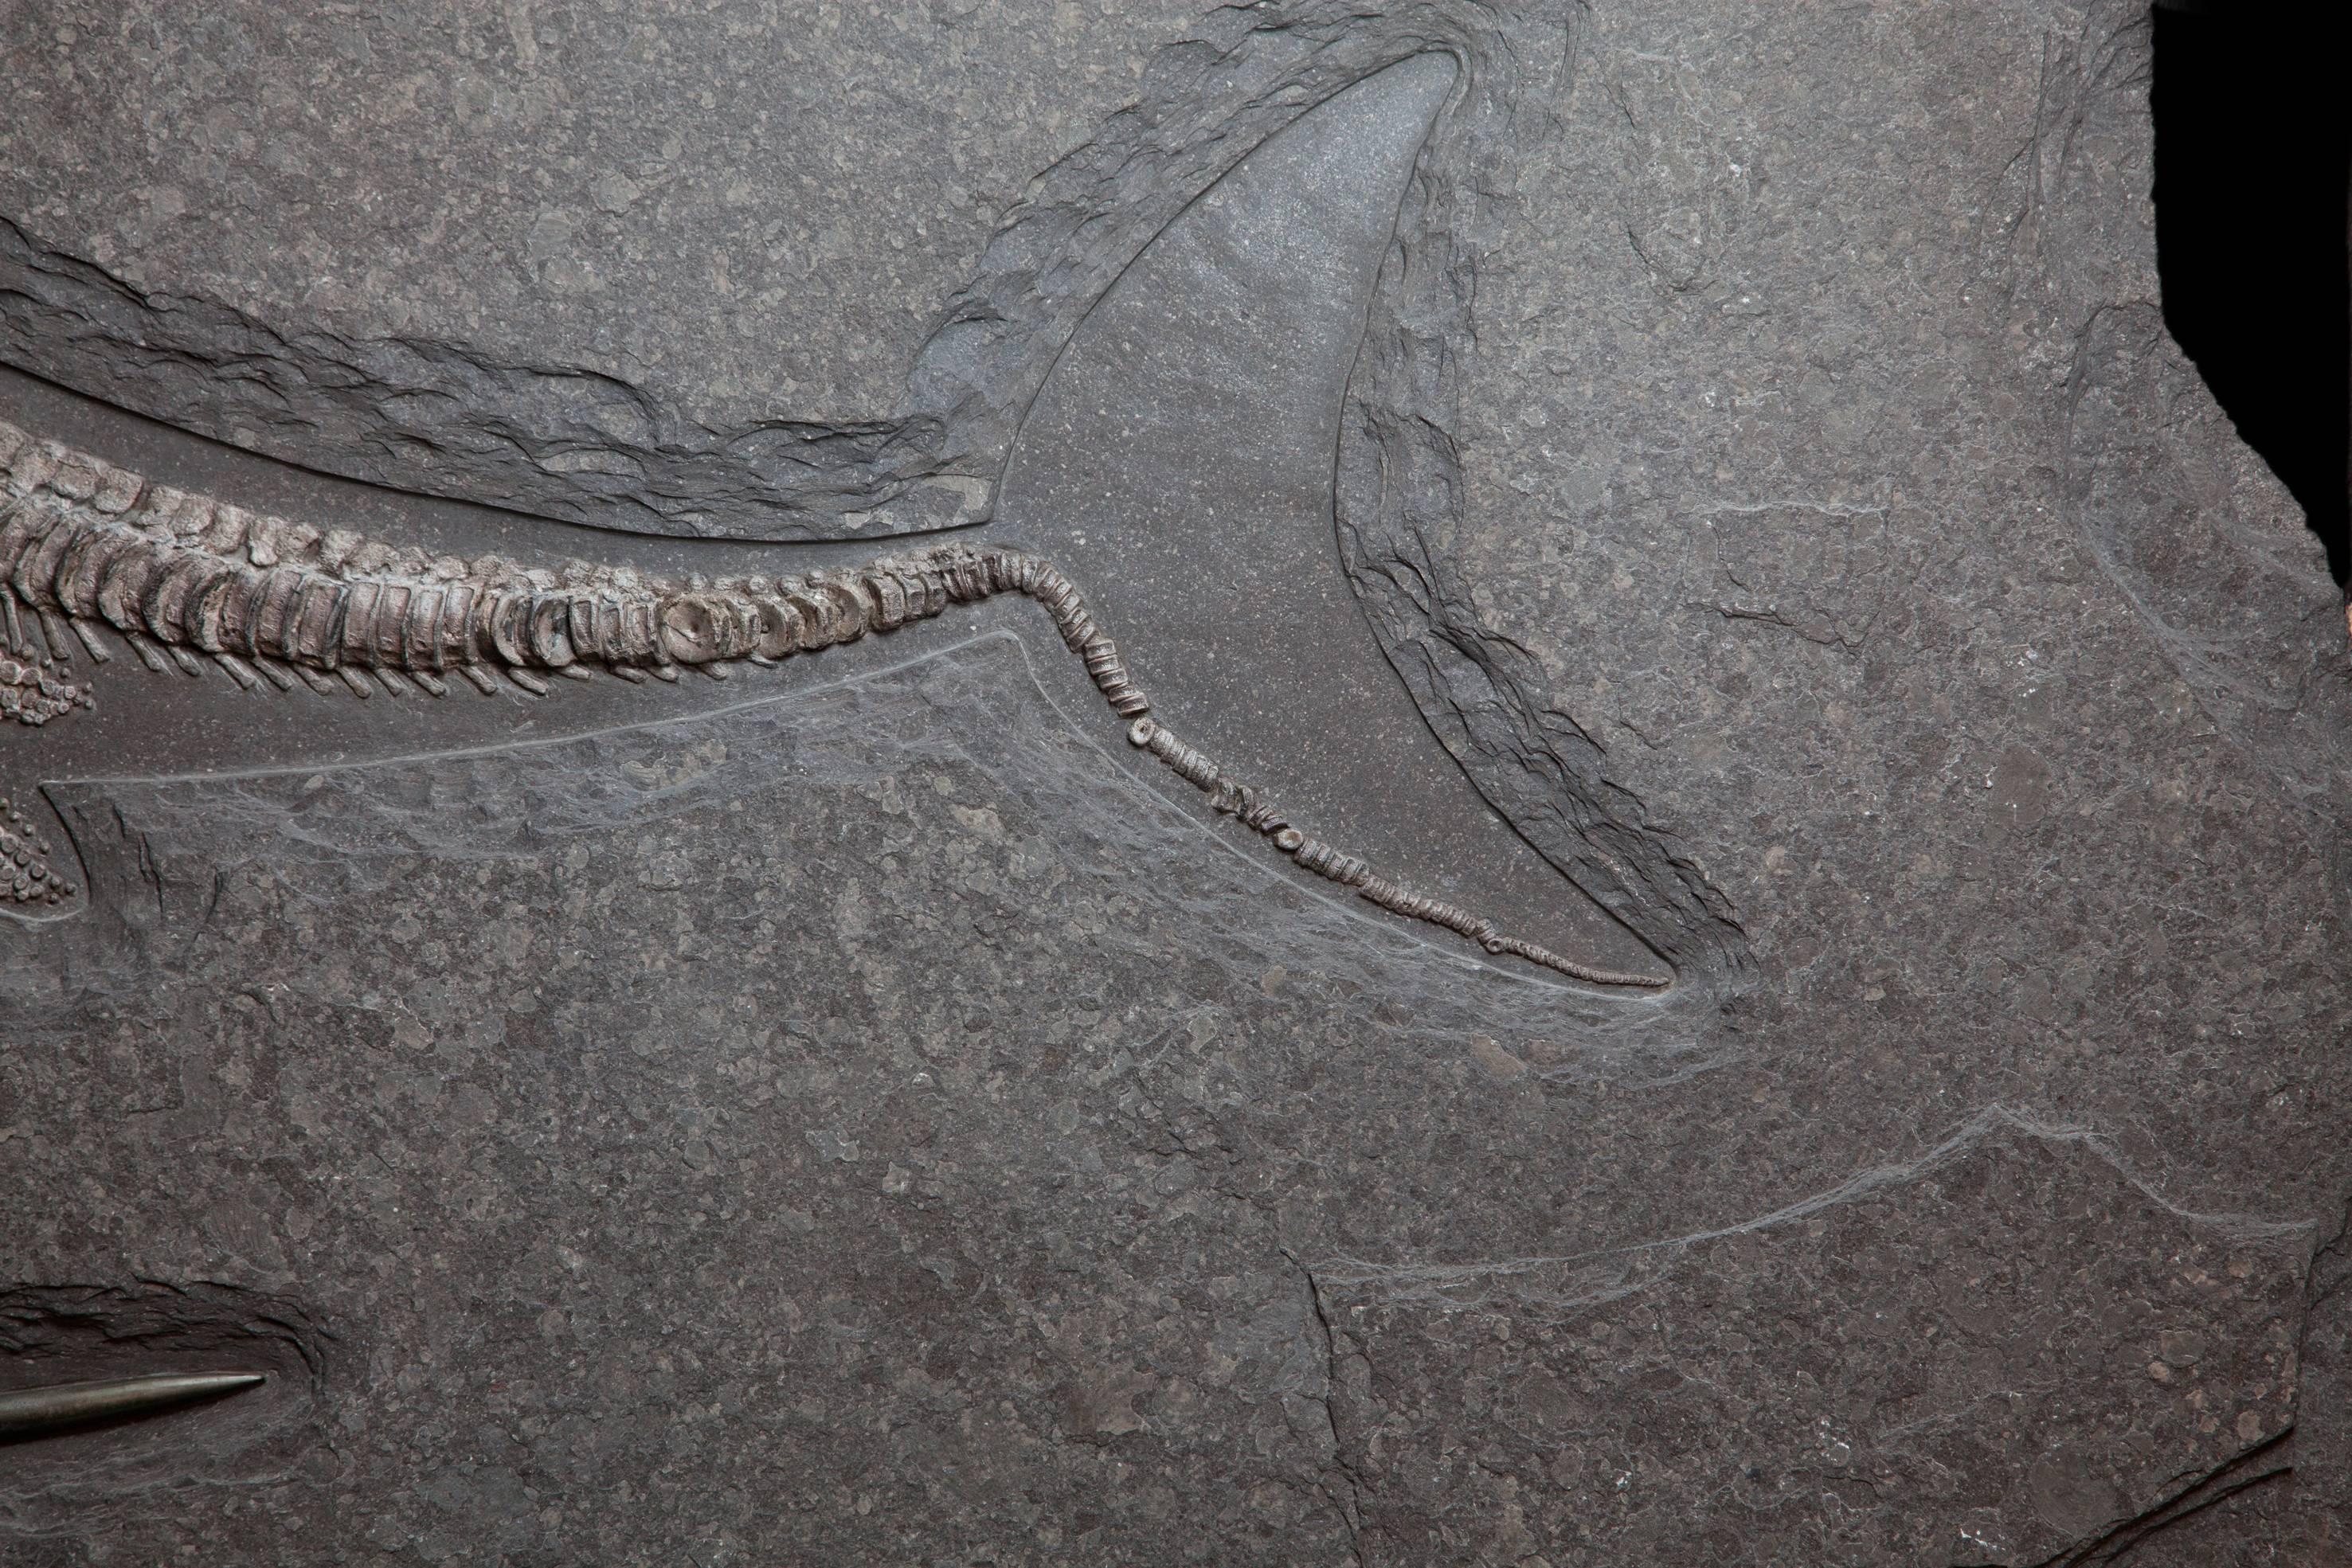 ichthyosaur for sale